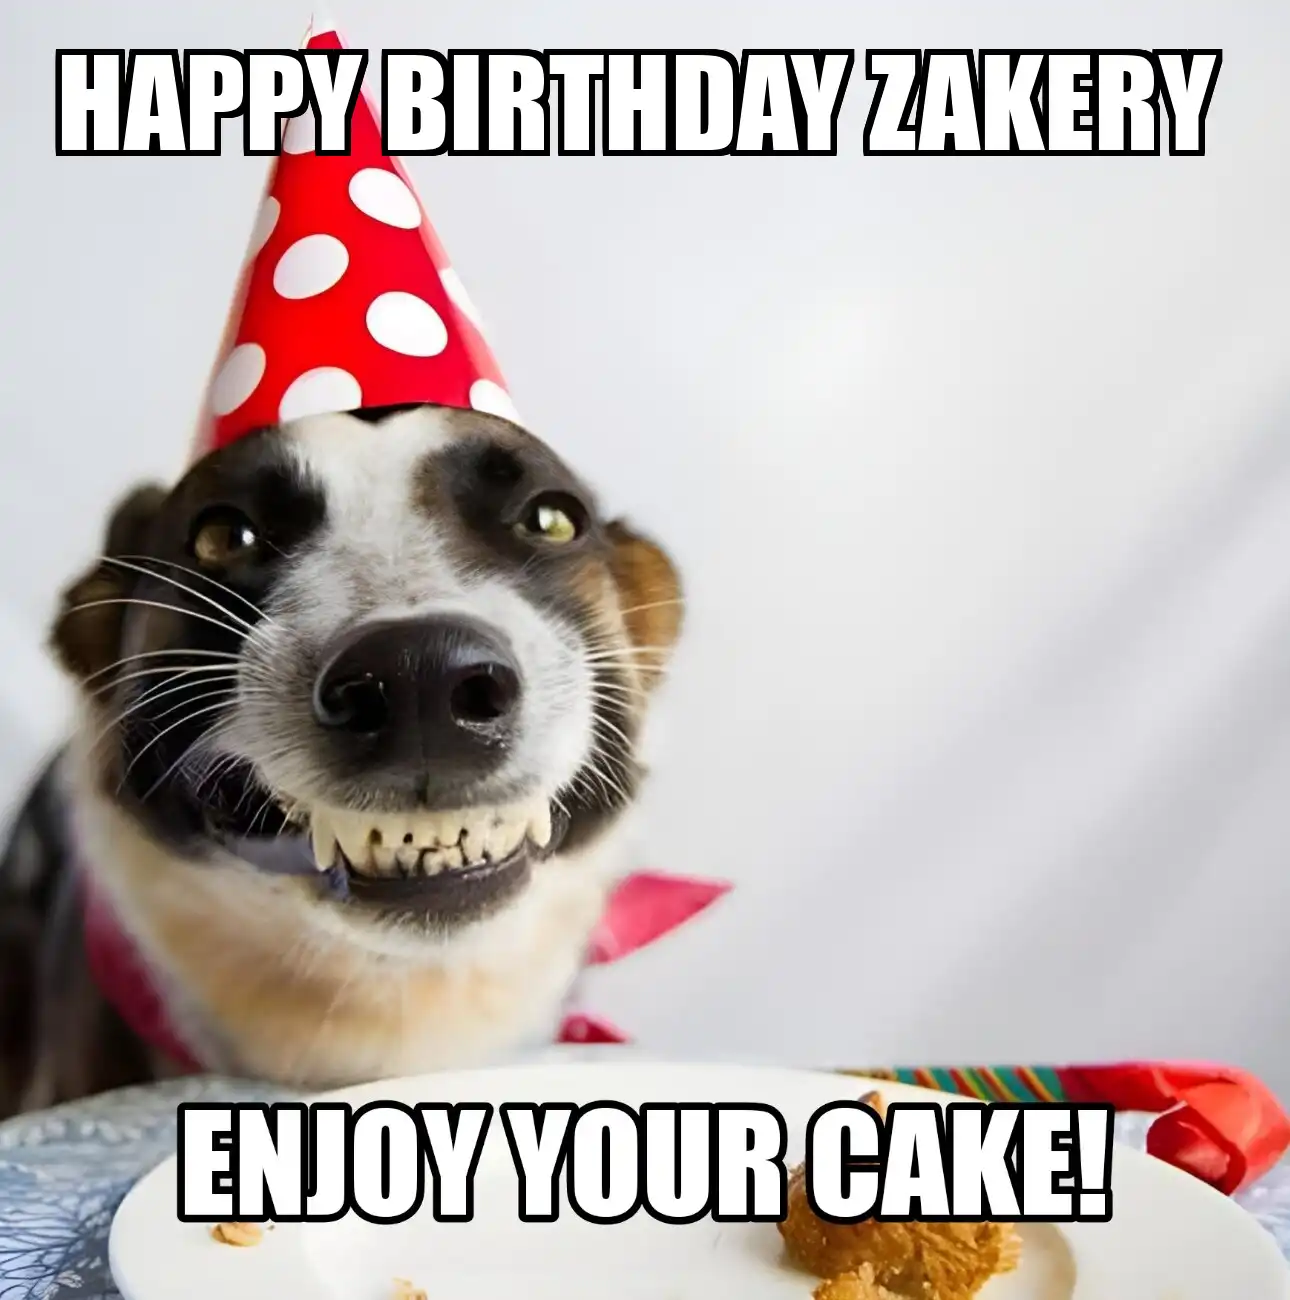 Happy Birthday Zakery Enjoy Your Cake Dog Meme